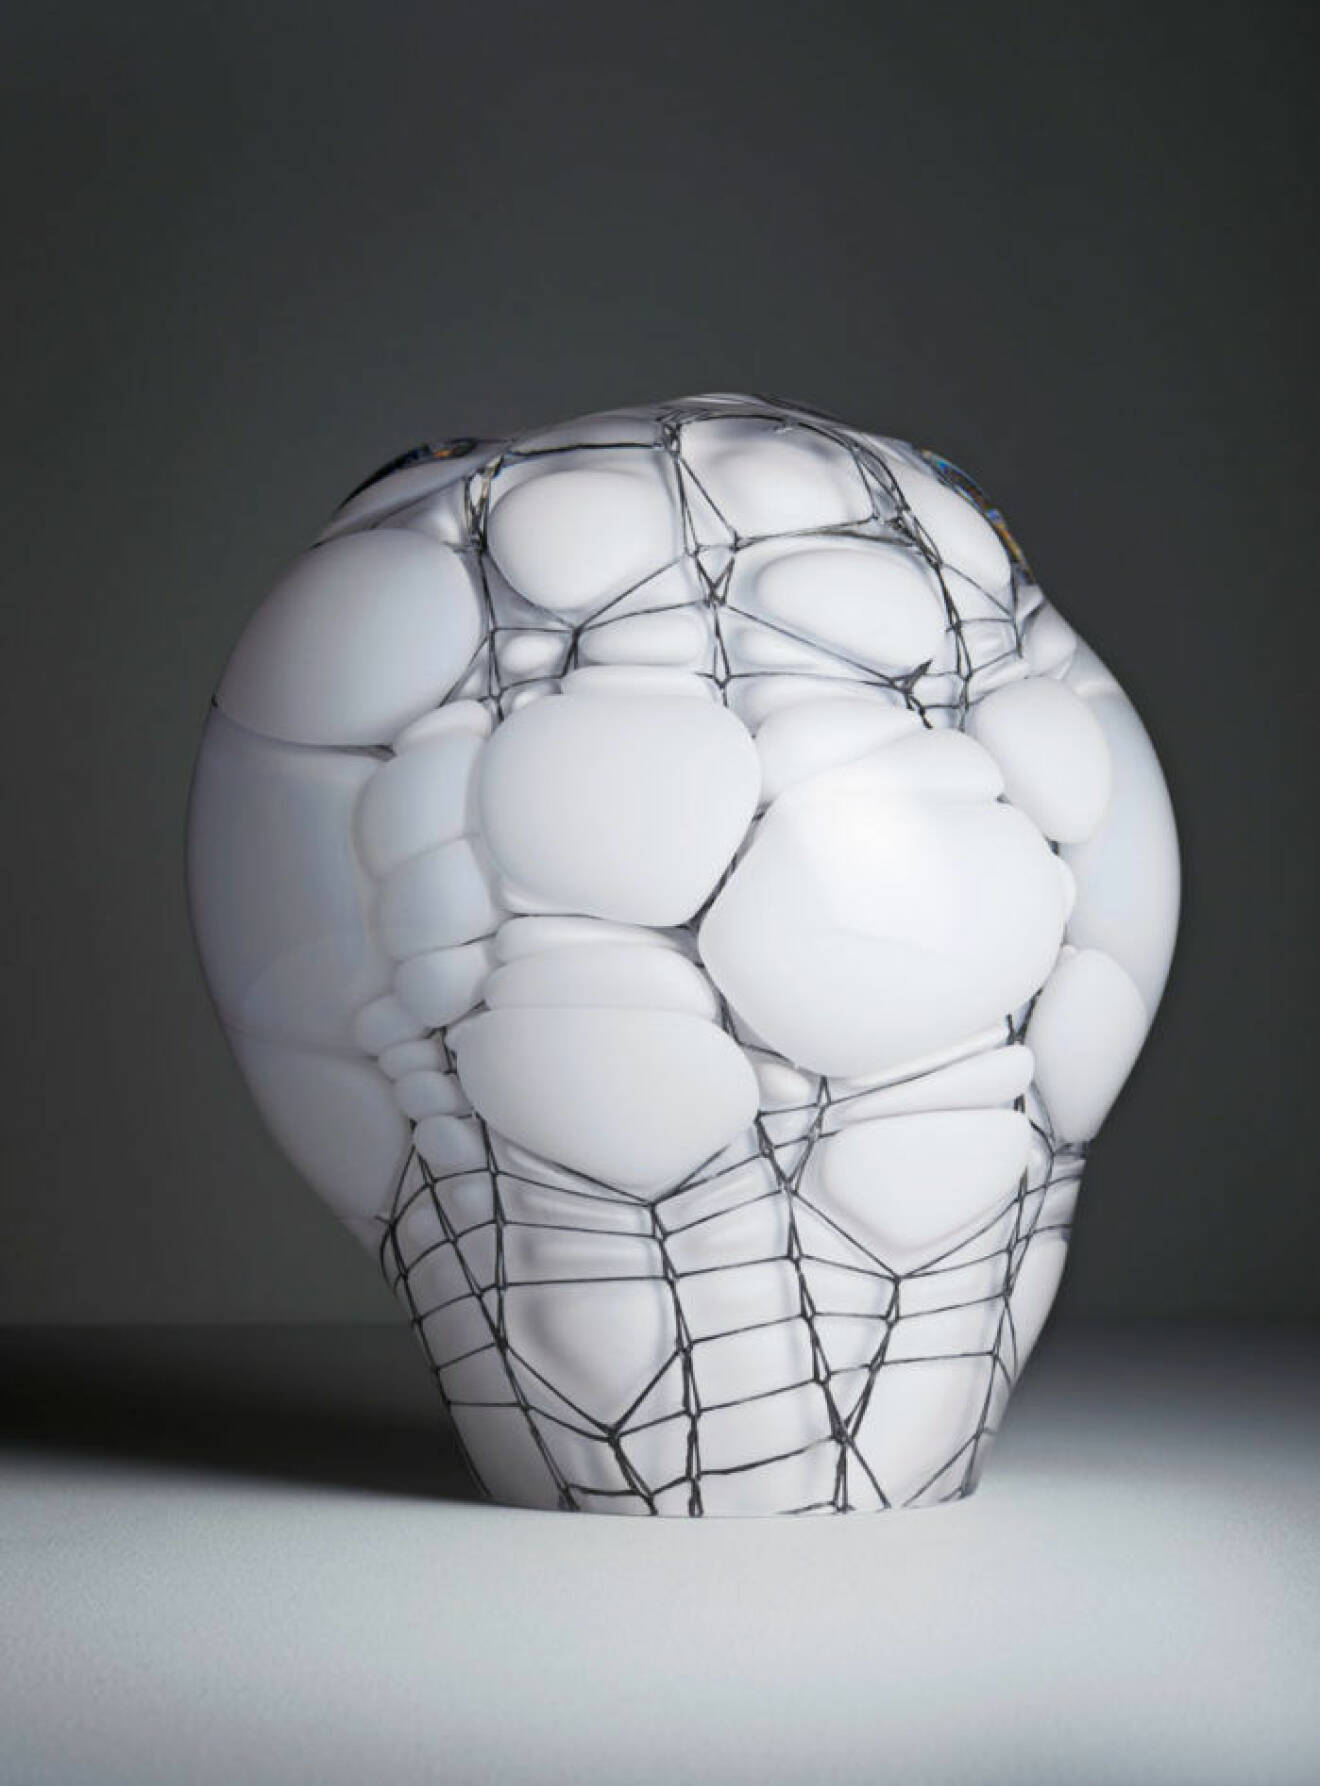 Dekorativ skulptur i glas som är blåst genom ståltråd